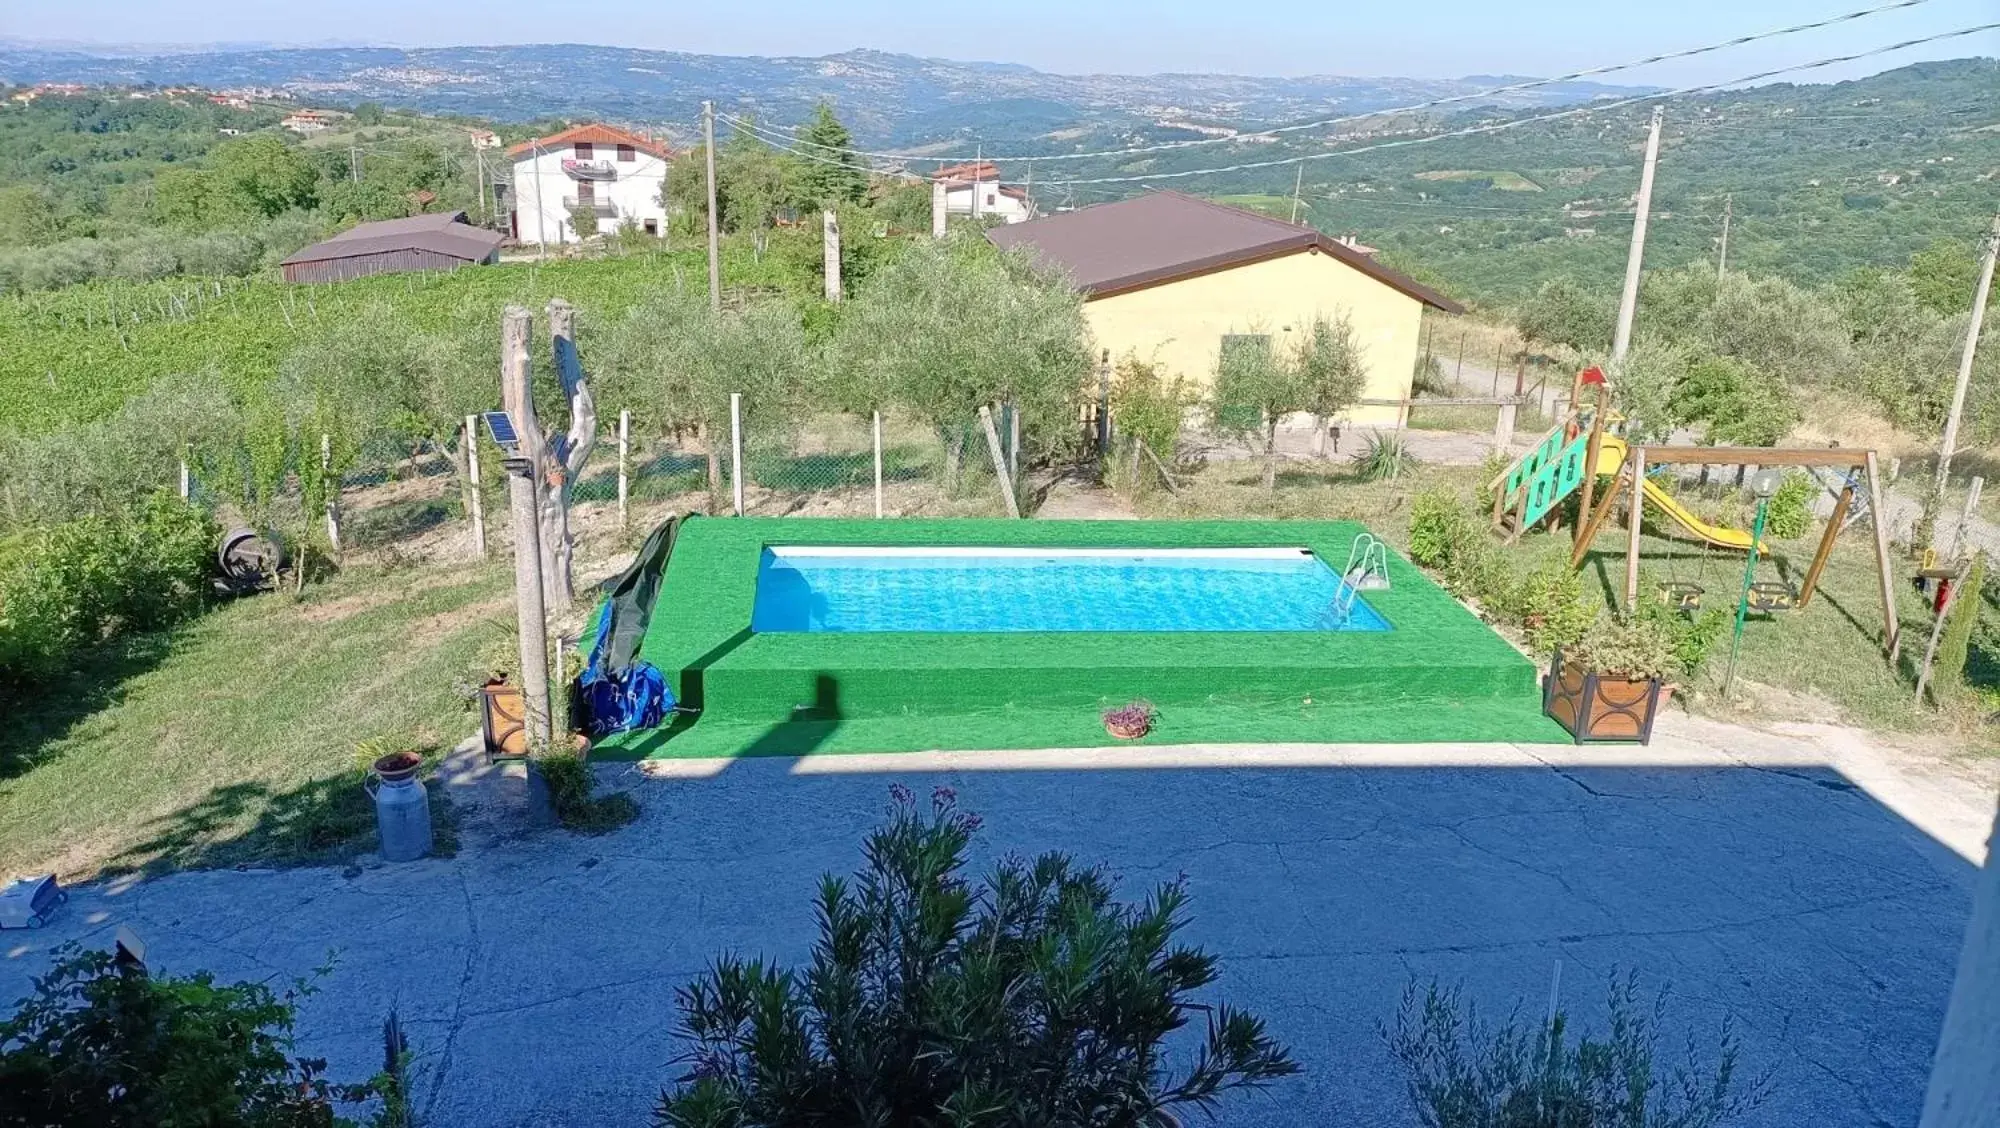 Swimming pool, Pool View in Agriturismo Macchia dei briganti - b&b